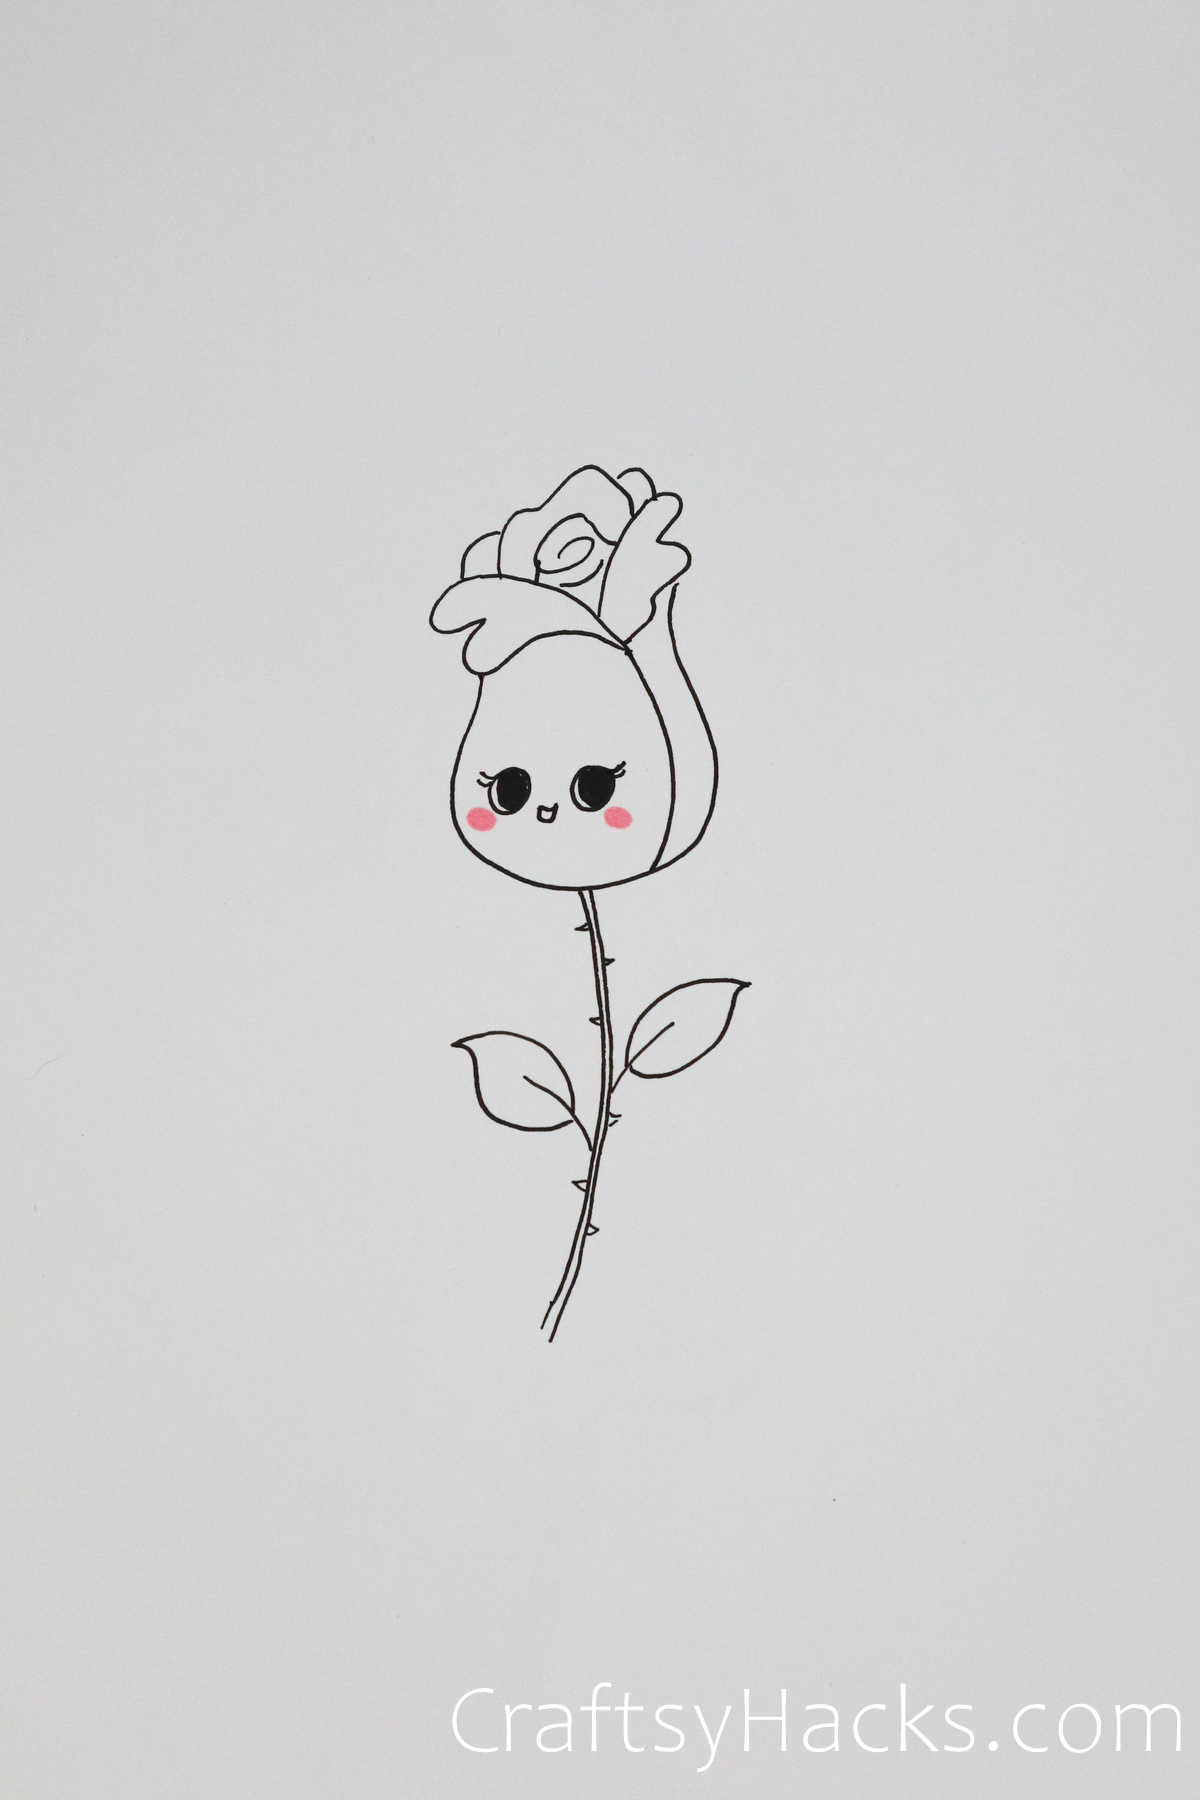 cartoon rose drawing